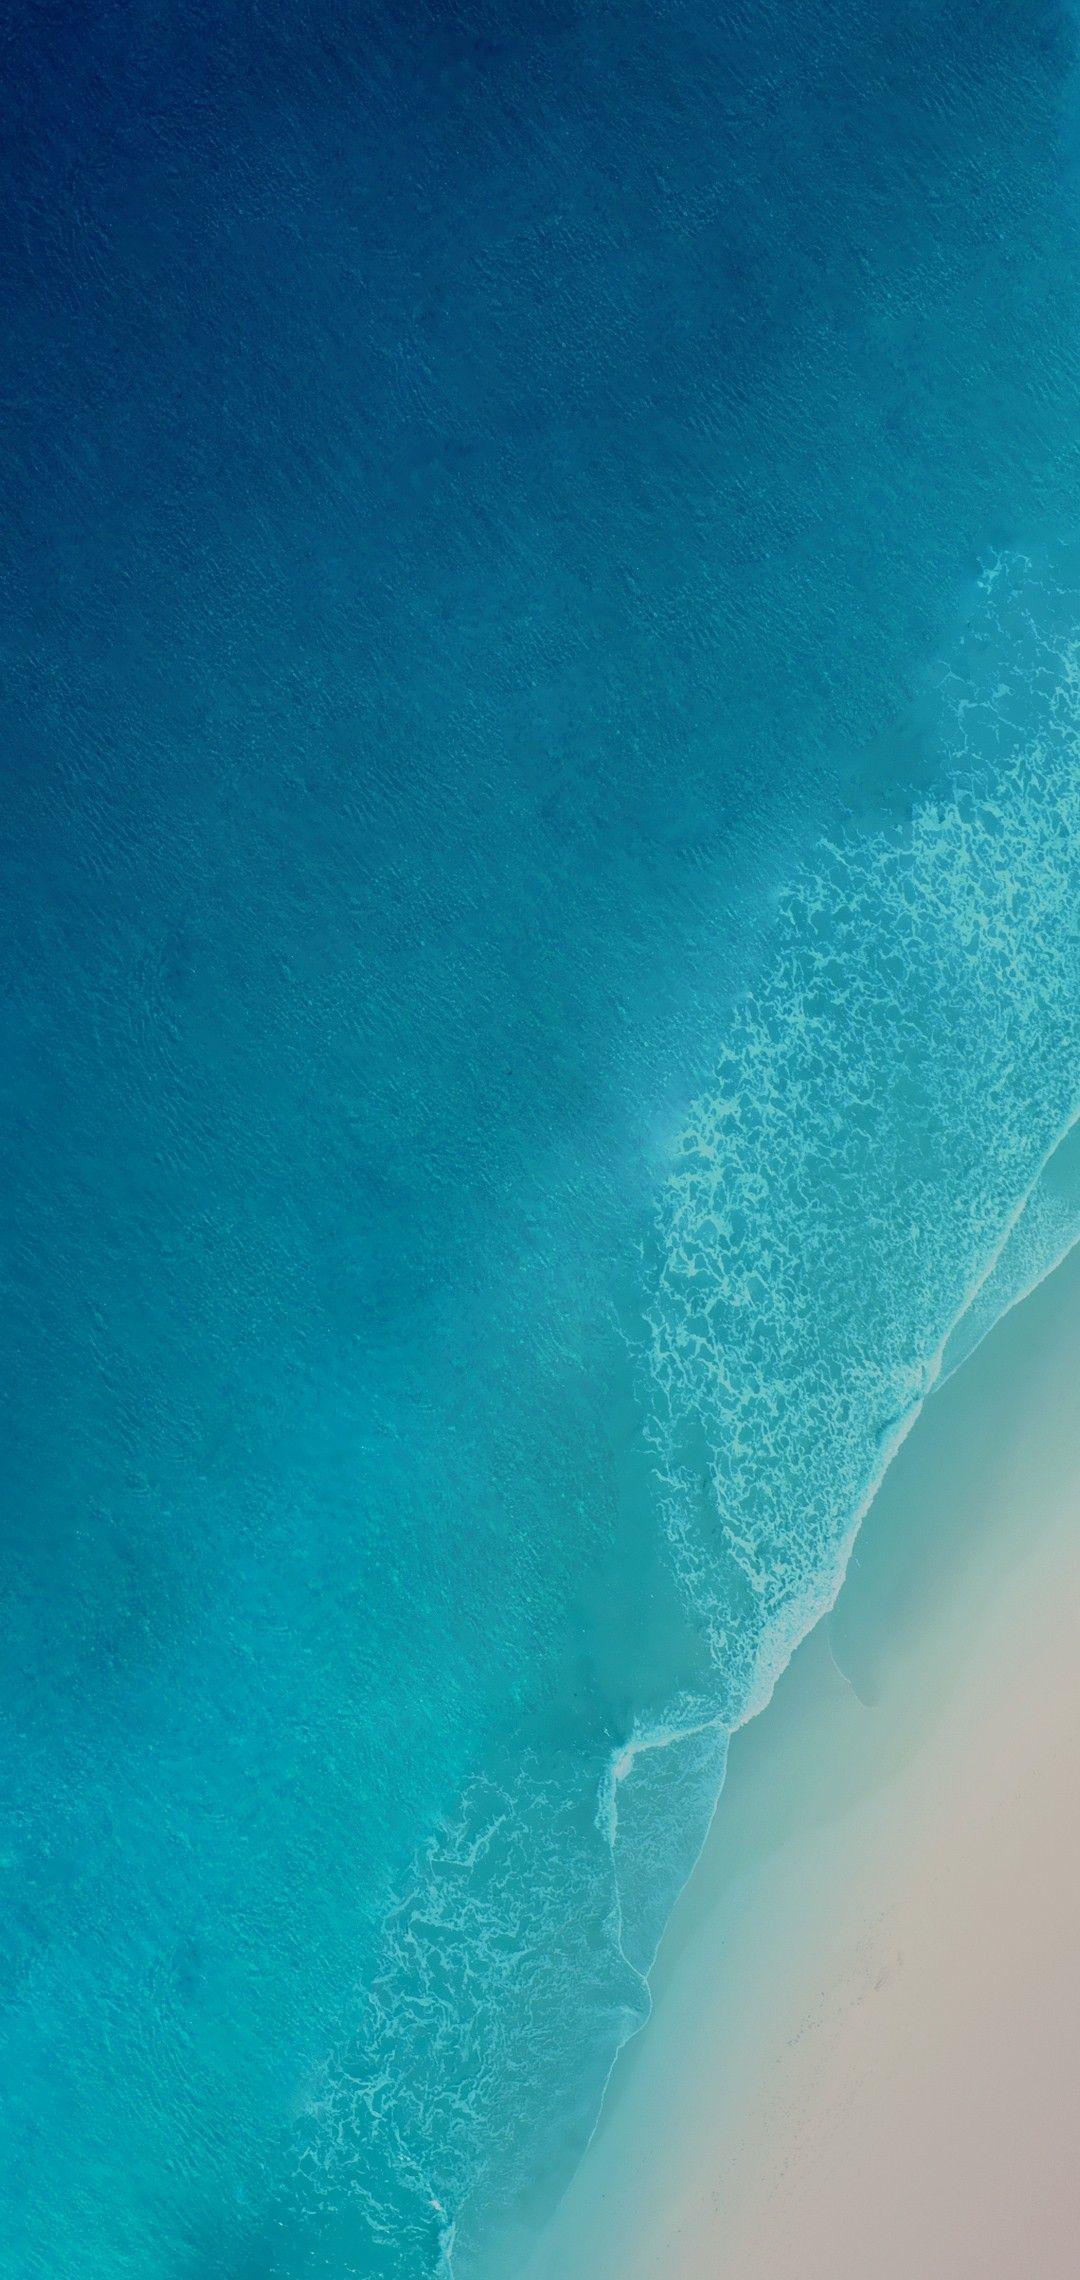 Aqua iPhone Wallpapers - Top Free Aqua iPhone Backgrounds - WallpaperAccess